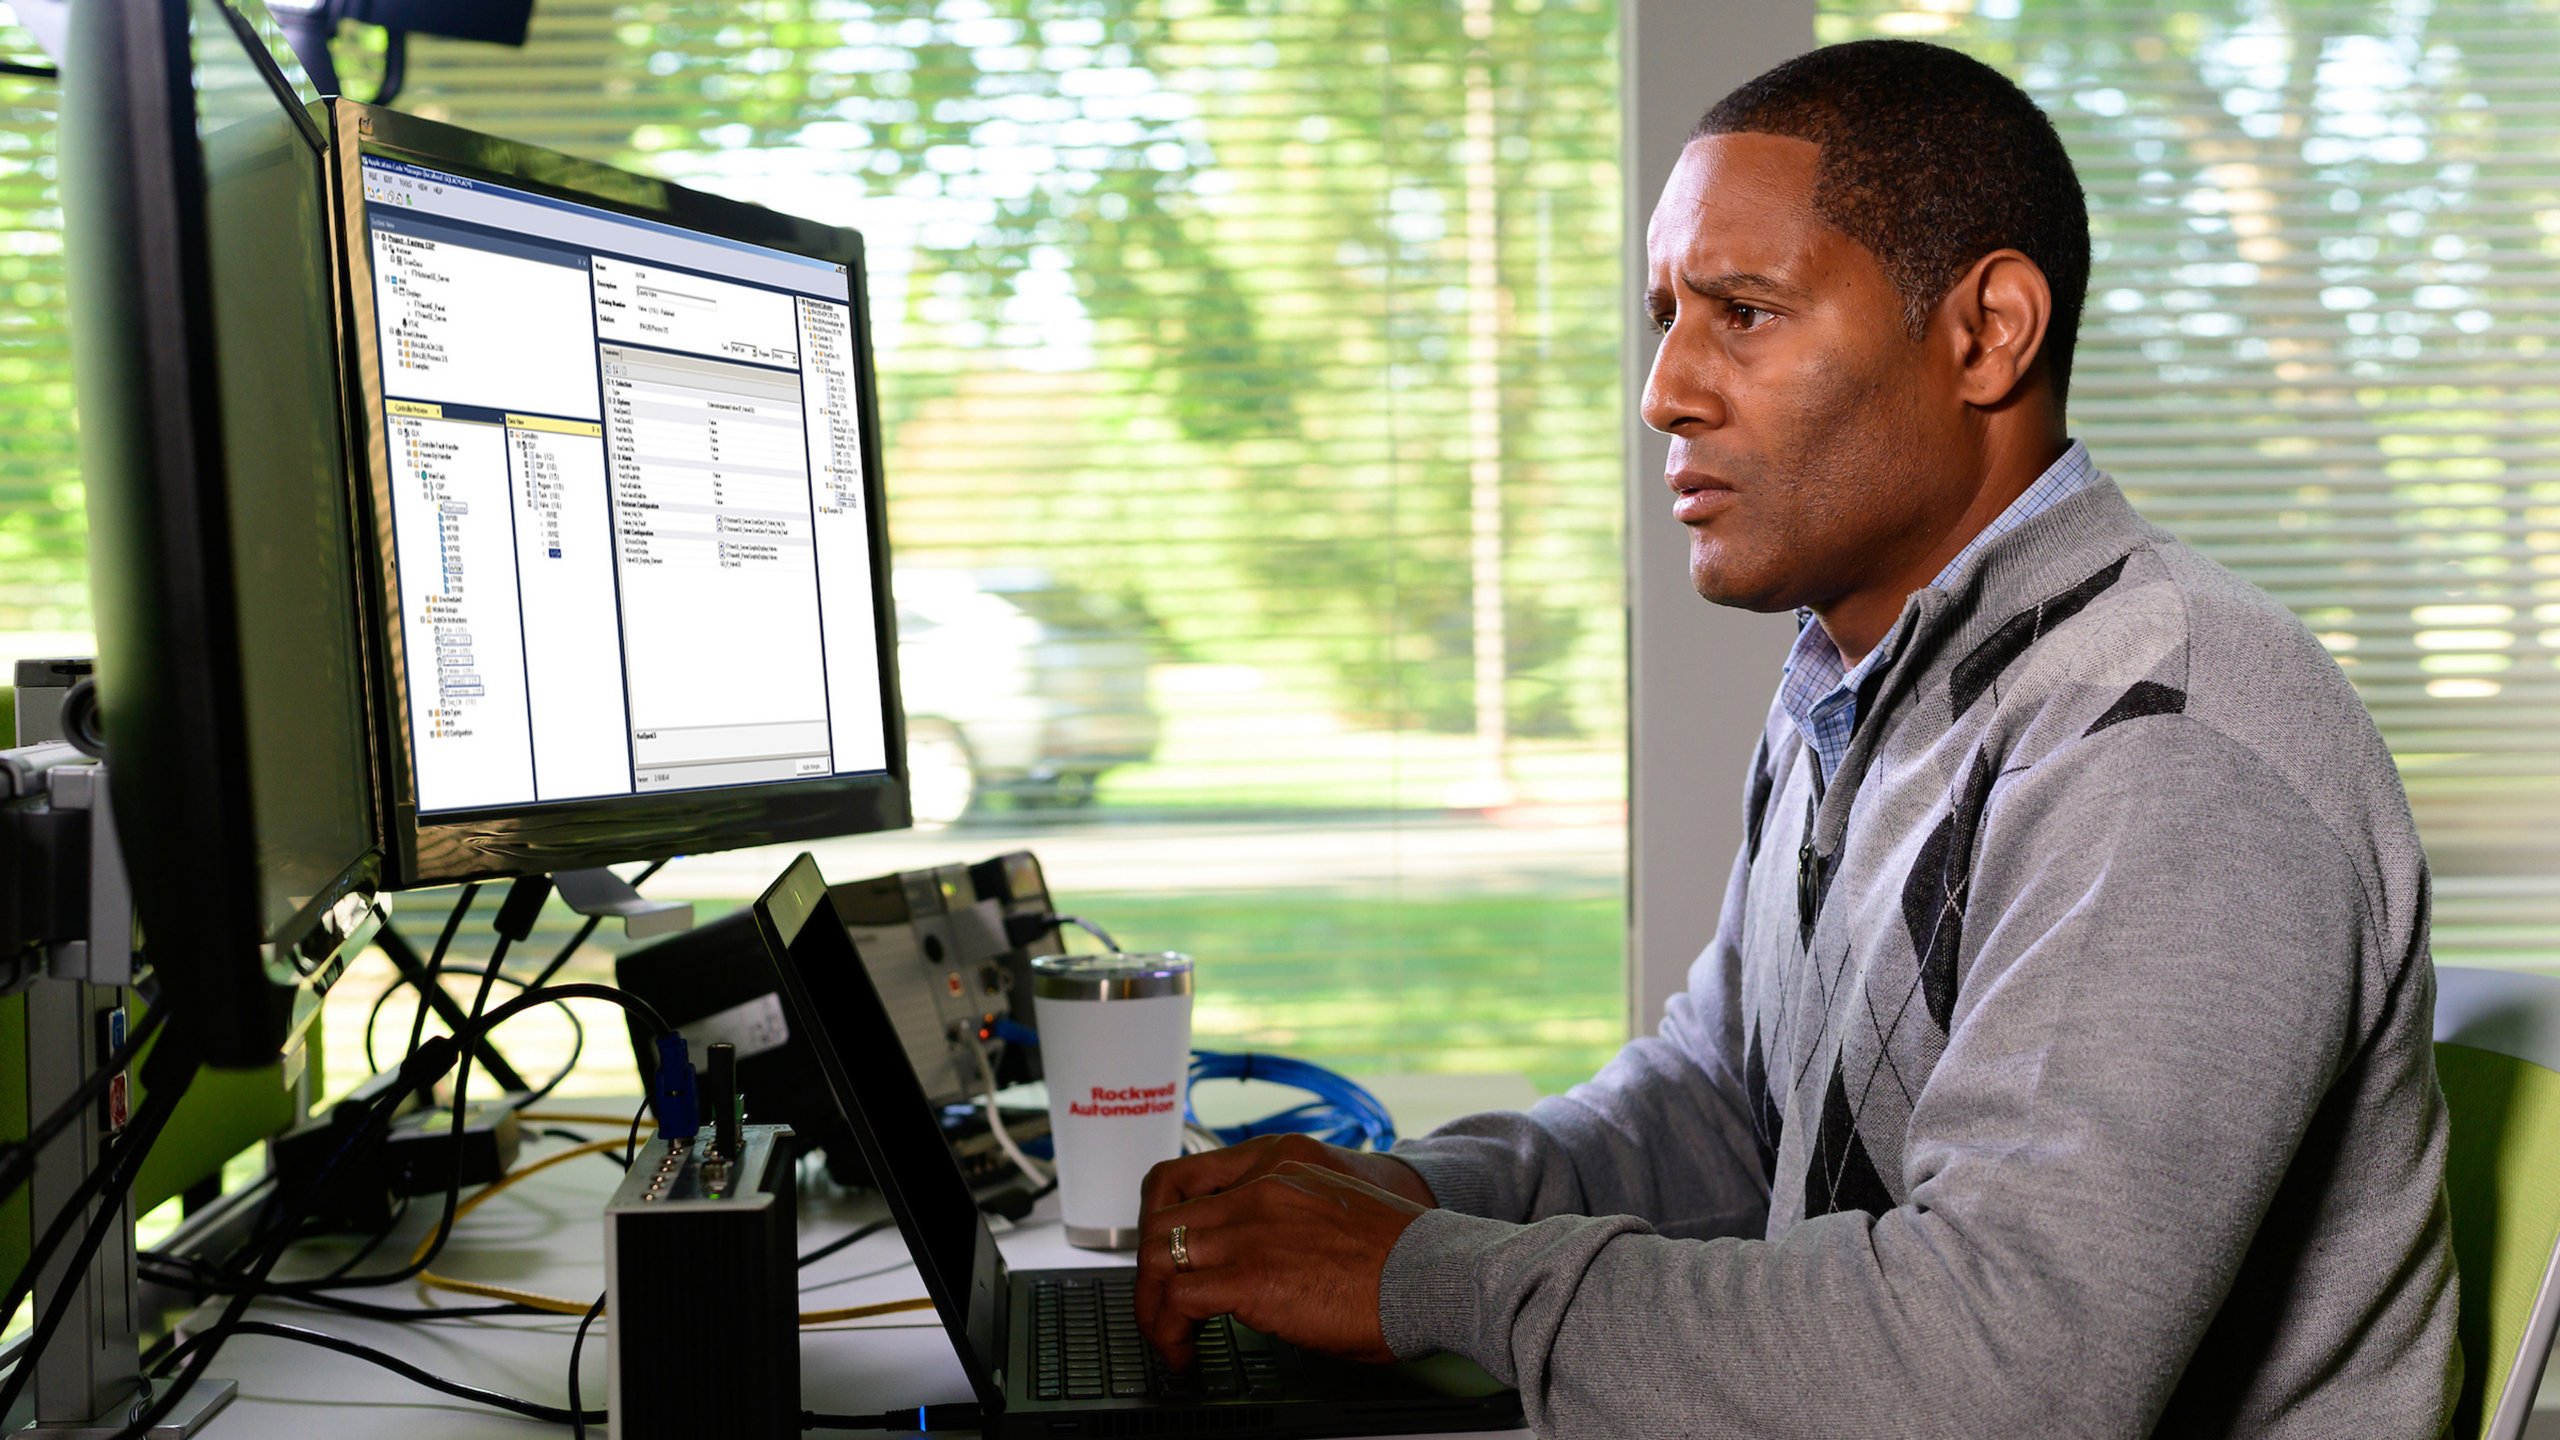 Dipendente di Rockwell Automation che guarda il proprio monitor e aggiunge informazioni nel software Studio 5000 Application Code Manager